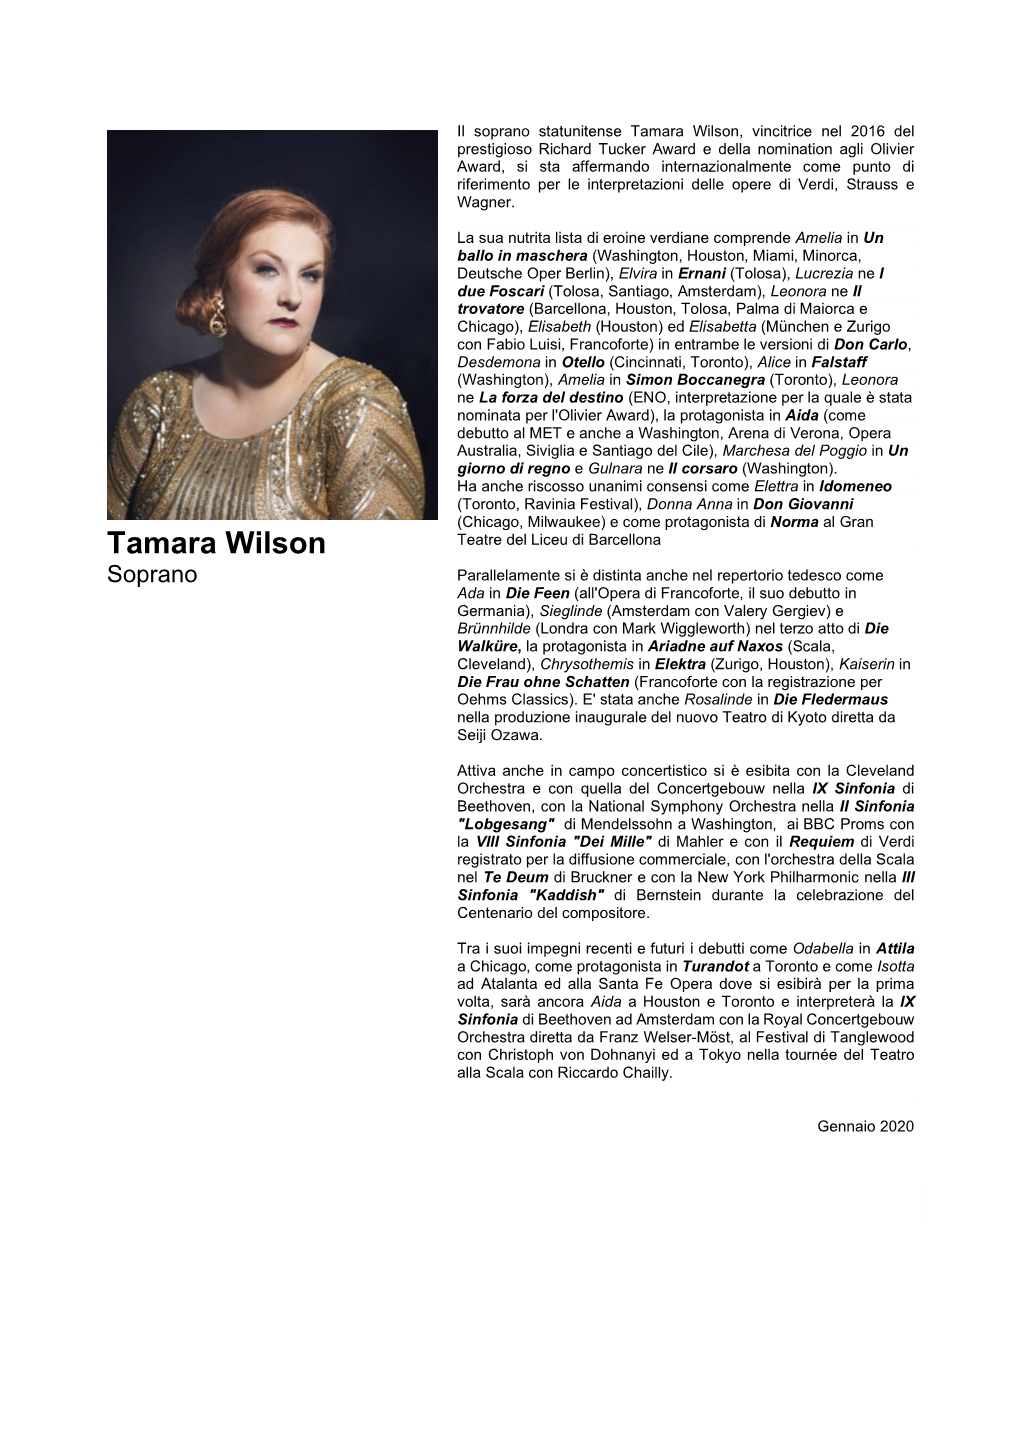 Tamara Wilson